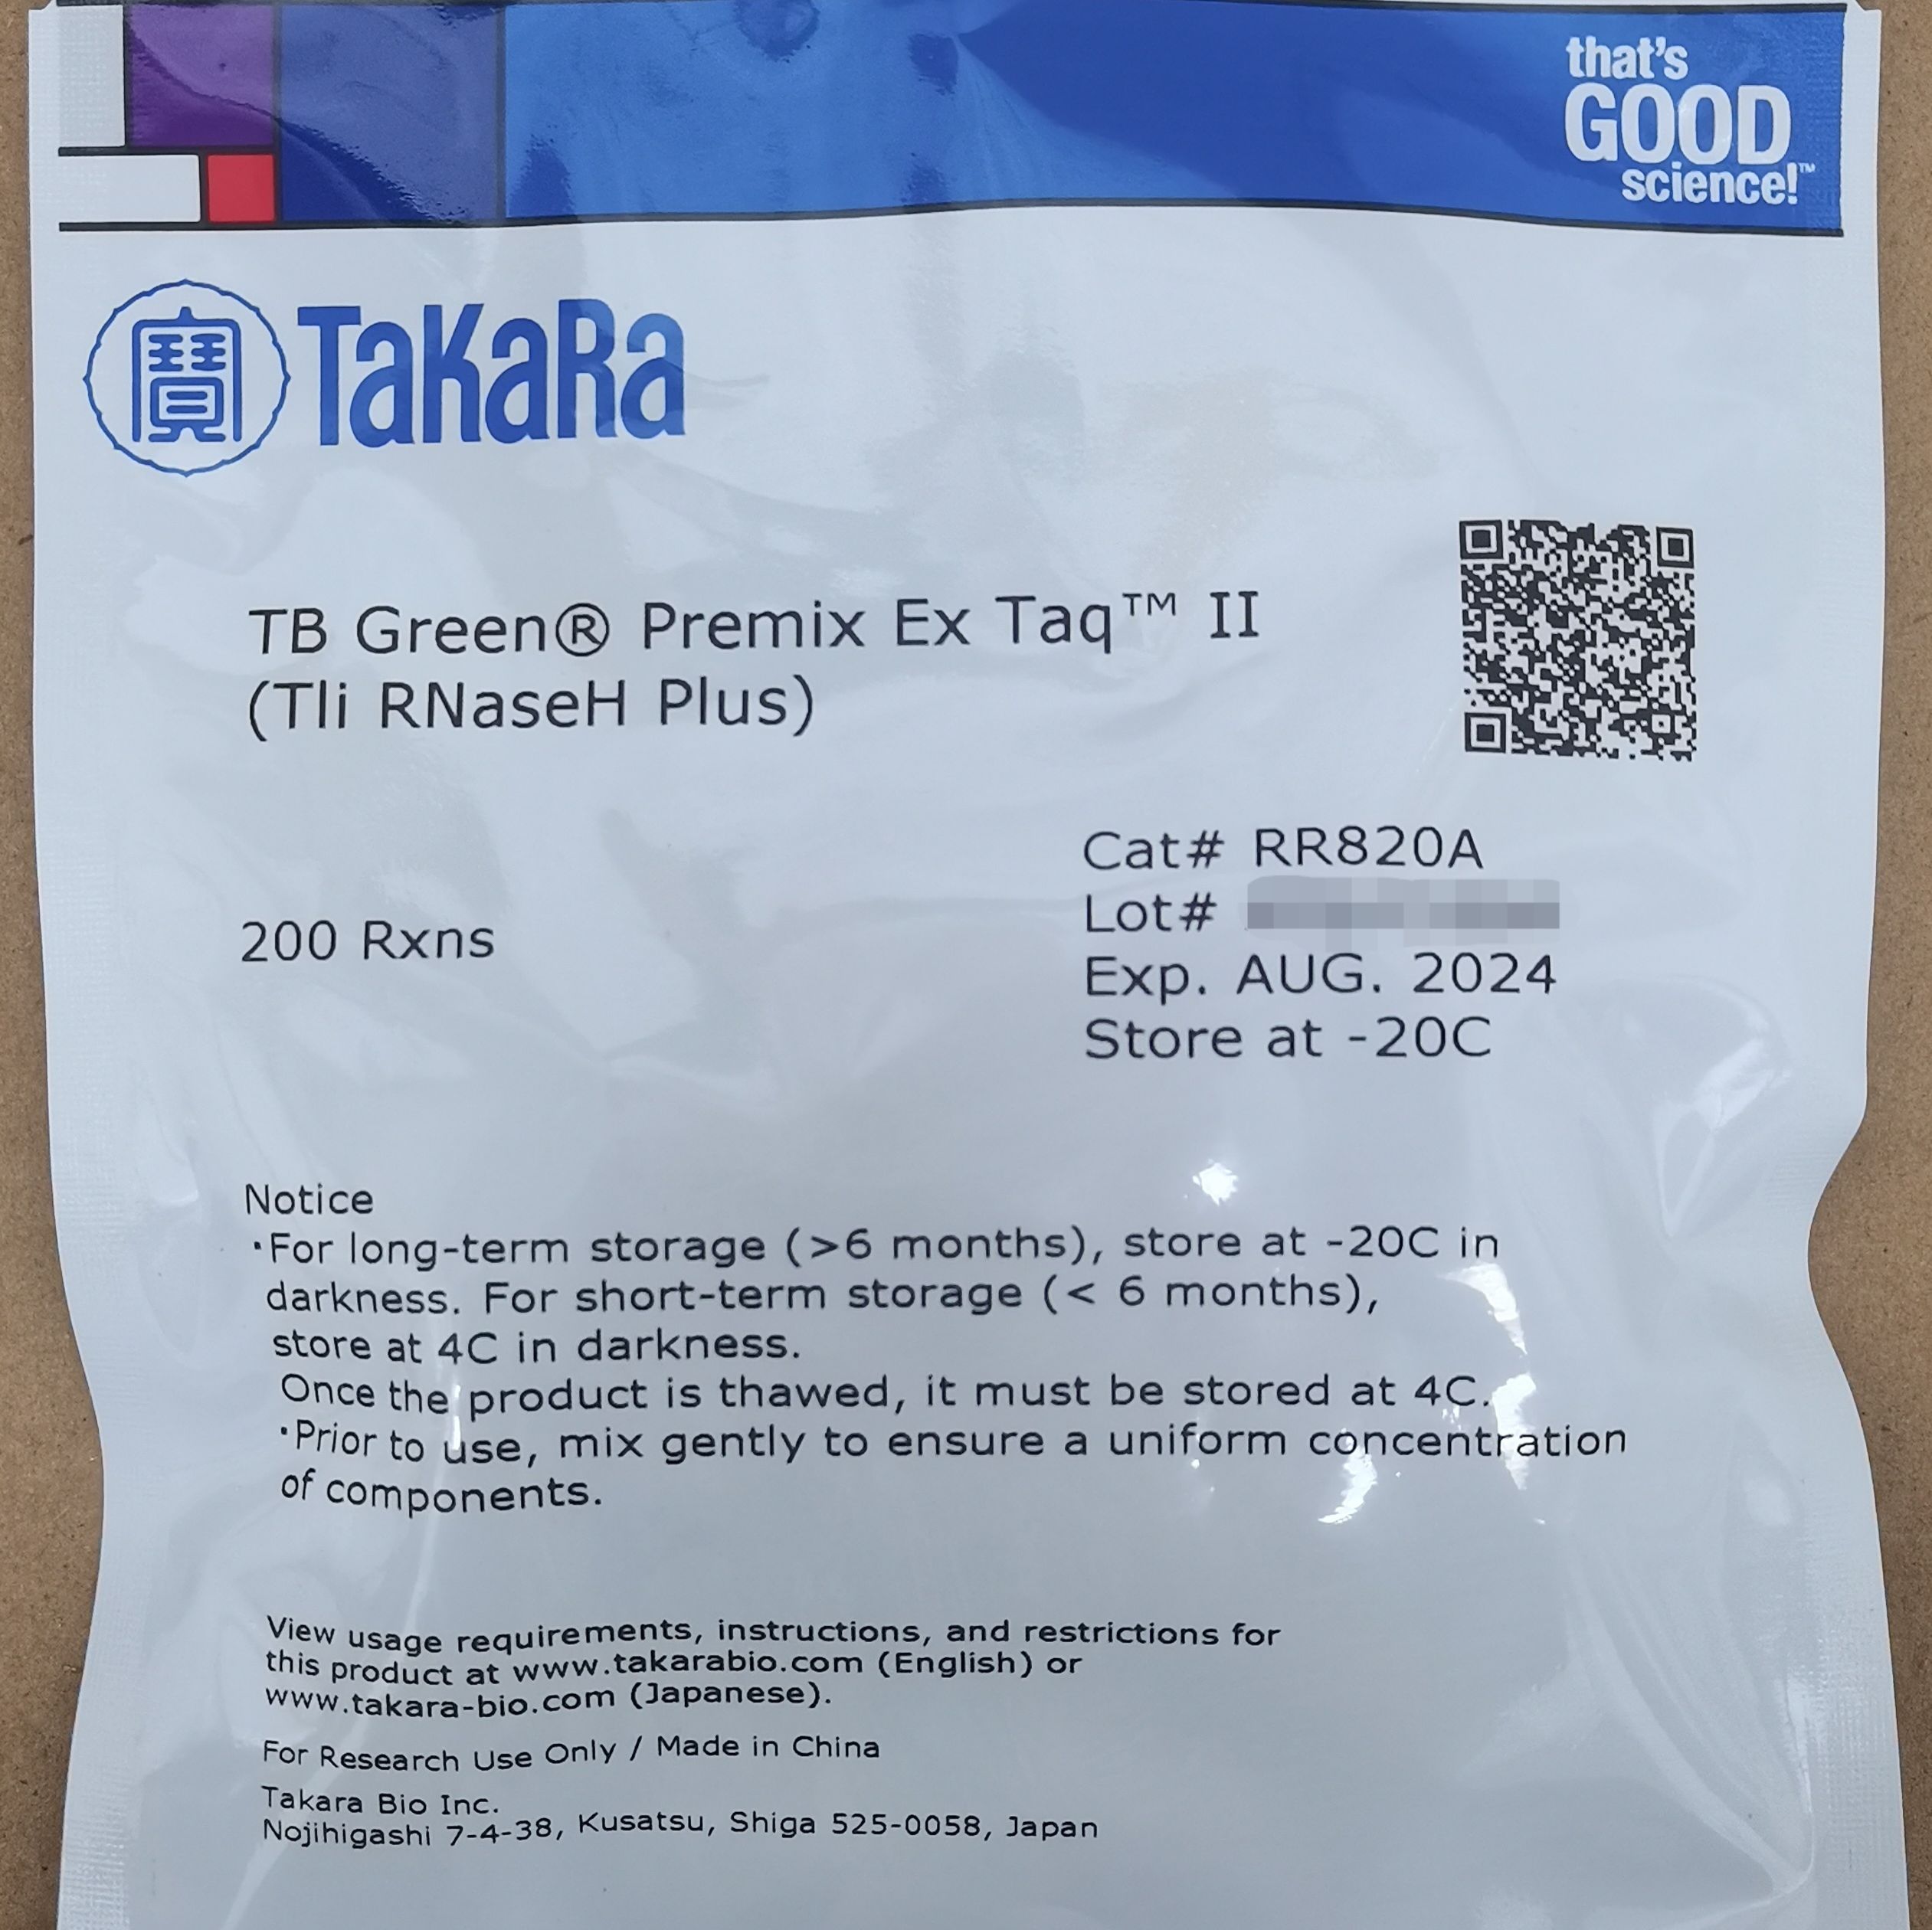 TB Green Premix Ex Taq II;TAKARA:RR820A (原SYBR Premix Ex Taq II）